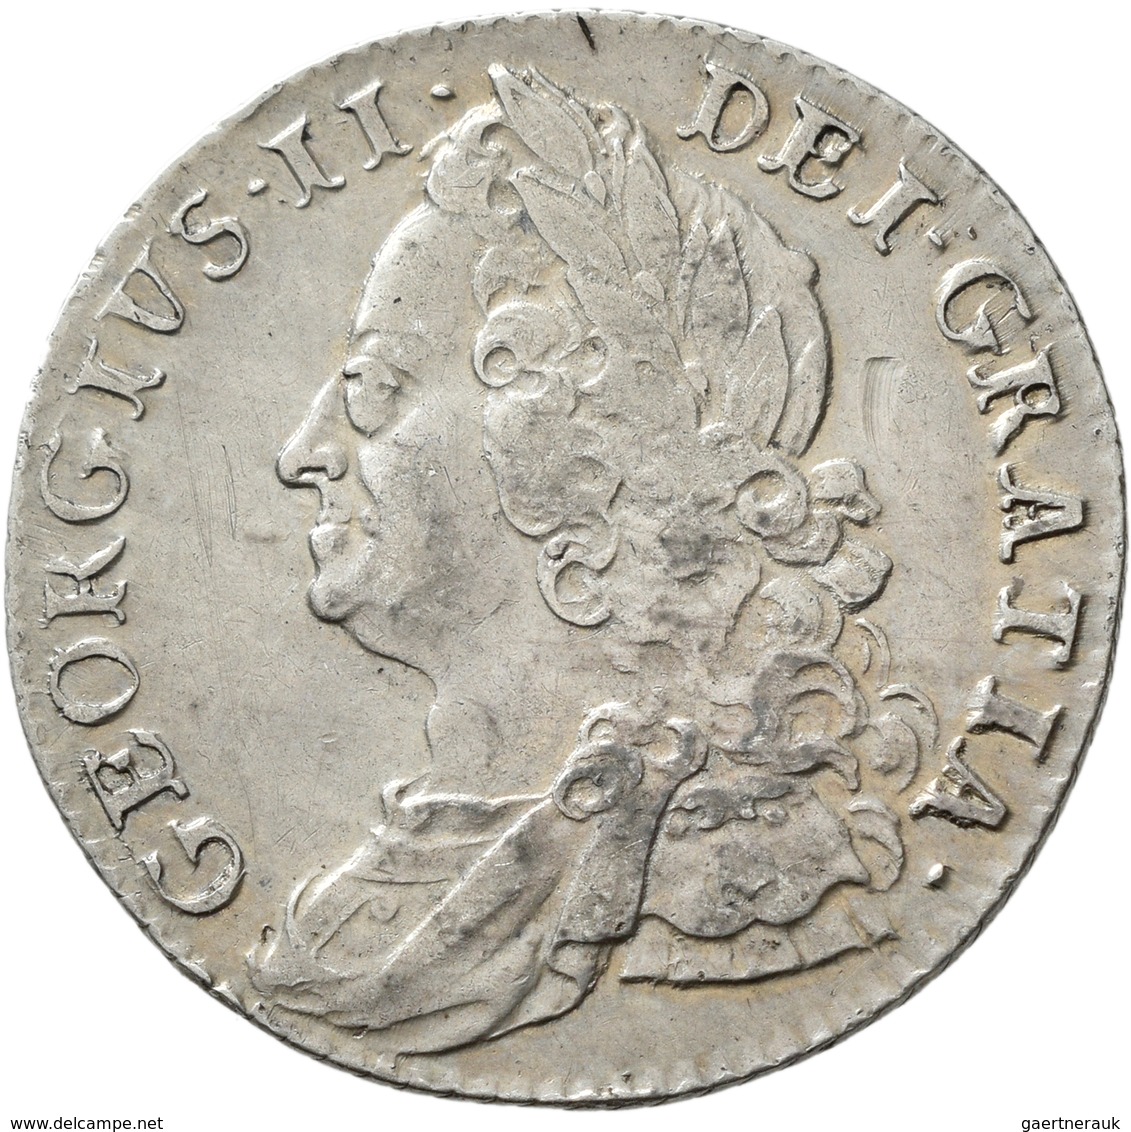 Großbritannien: Georg II. 1727-1760: Lot 4 Stück; Shilling 1737, 1743, 1745, 1750, sehr schön, sehr